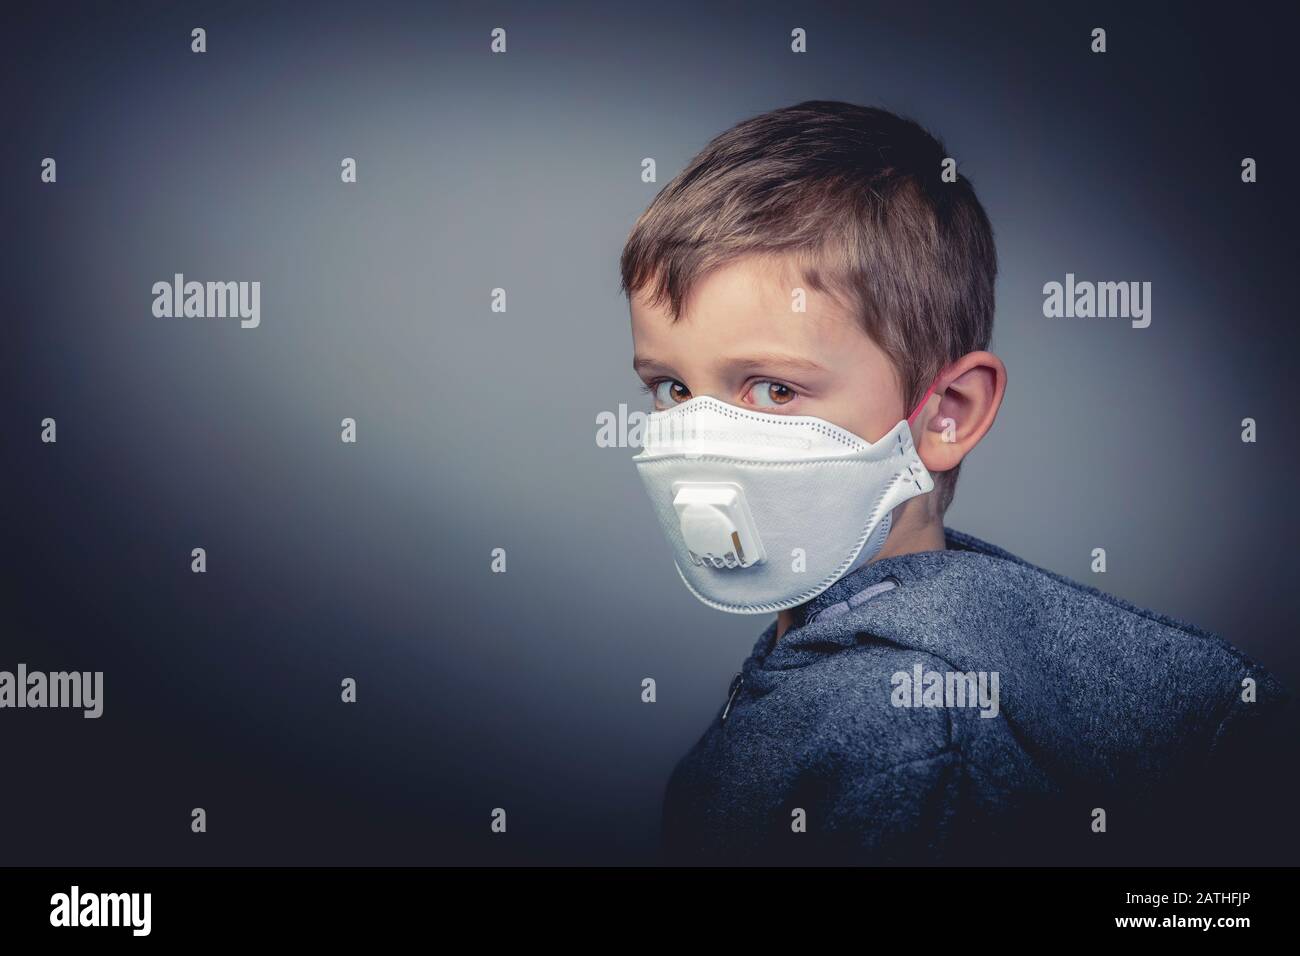 el joven de 6 años de edad, el chico caucásico, lleva una máscara médica protectora para defenderse contra el nuevo virus de la corona asiática. Primer piso, formato horizontal. Él Foto de stock